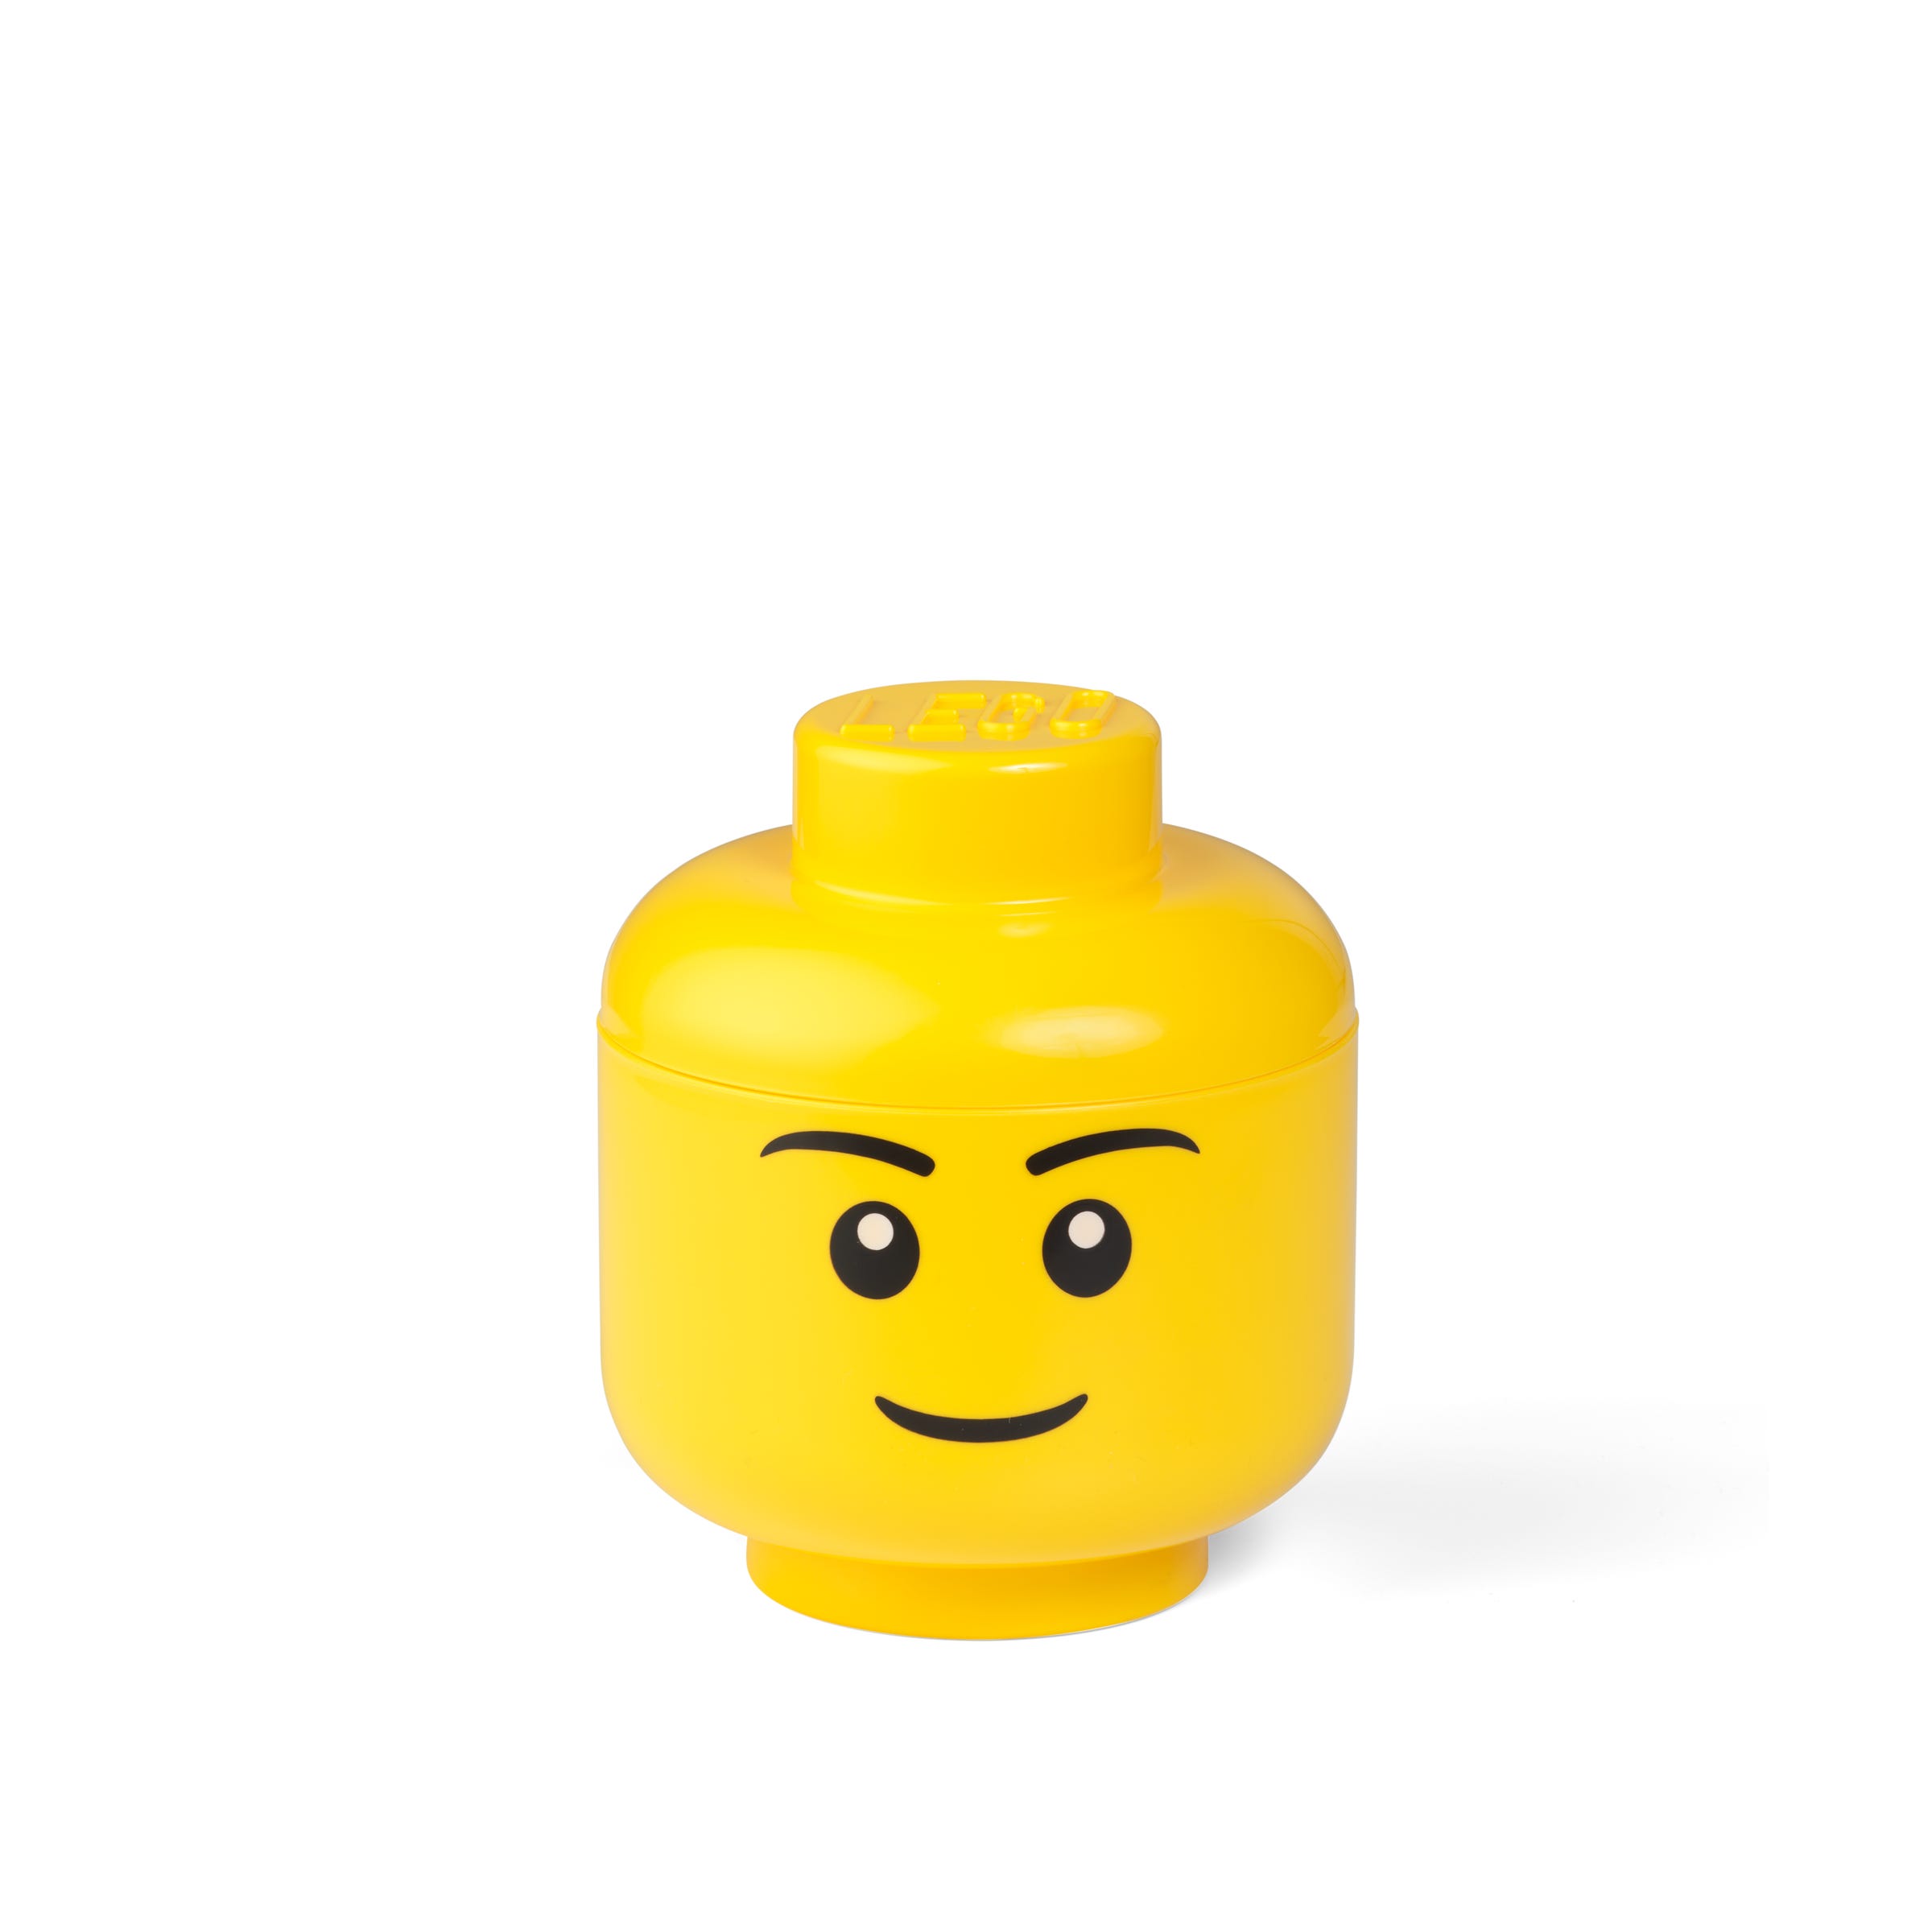 LEGO Boy Storage Head - Small